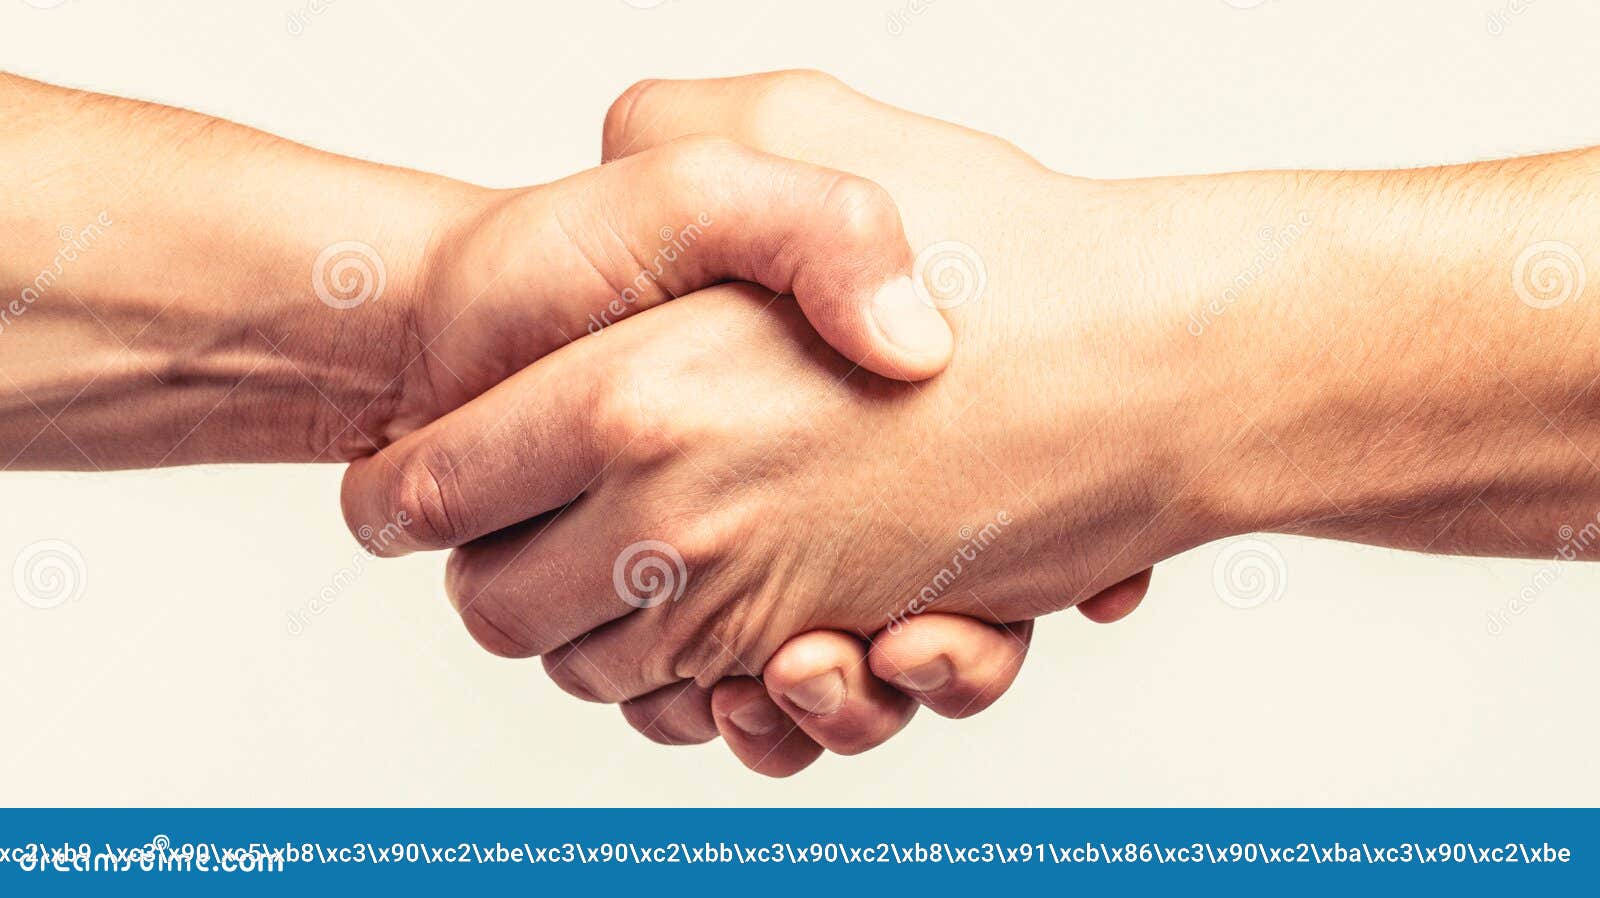 Дружеское рукопожатие. Дружеское Приветствие руками. Друзья пожимают друг другу руки со словами приветствия. Close friend 3